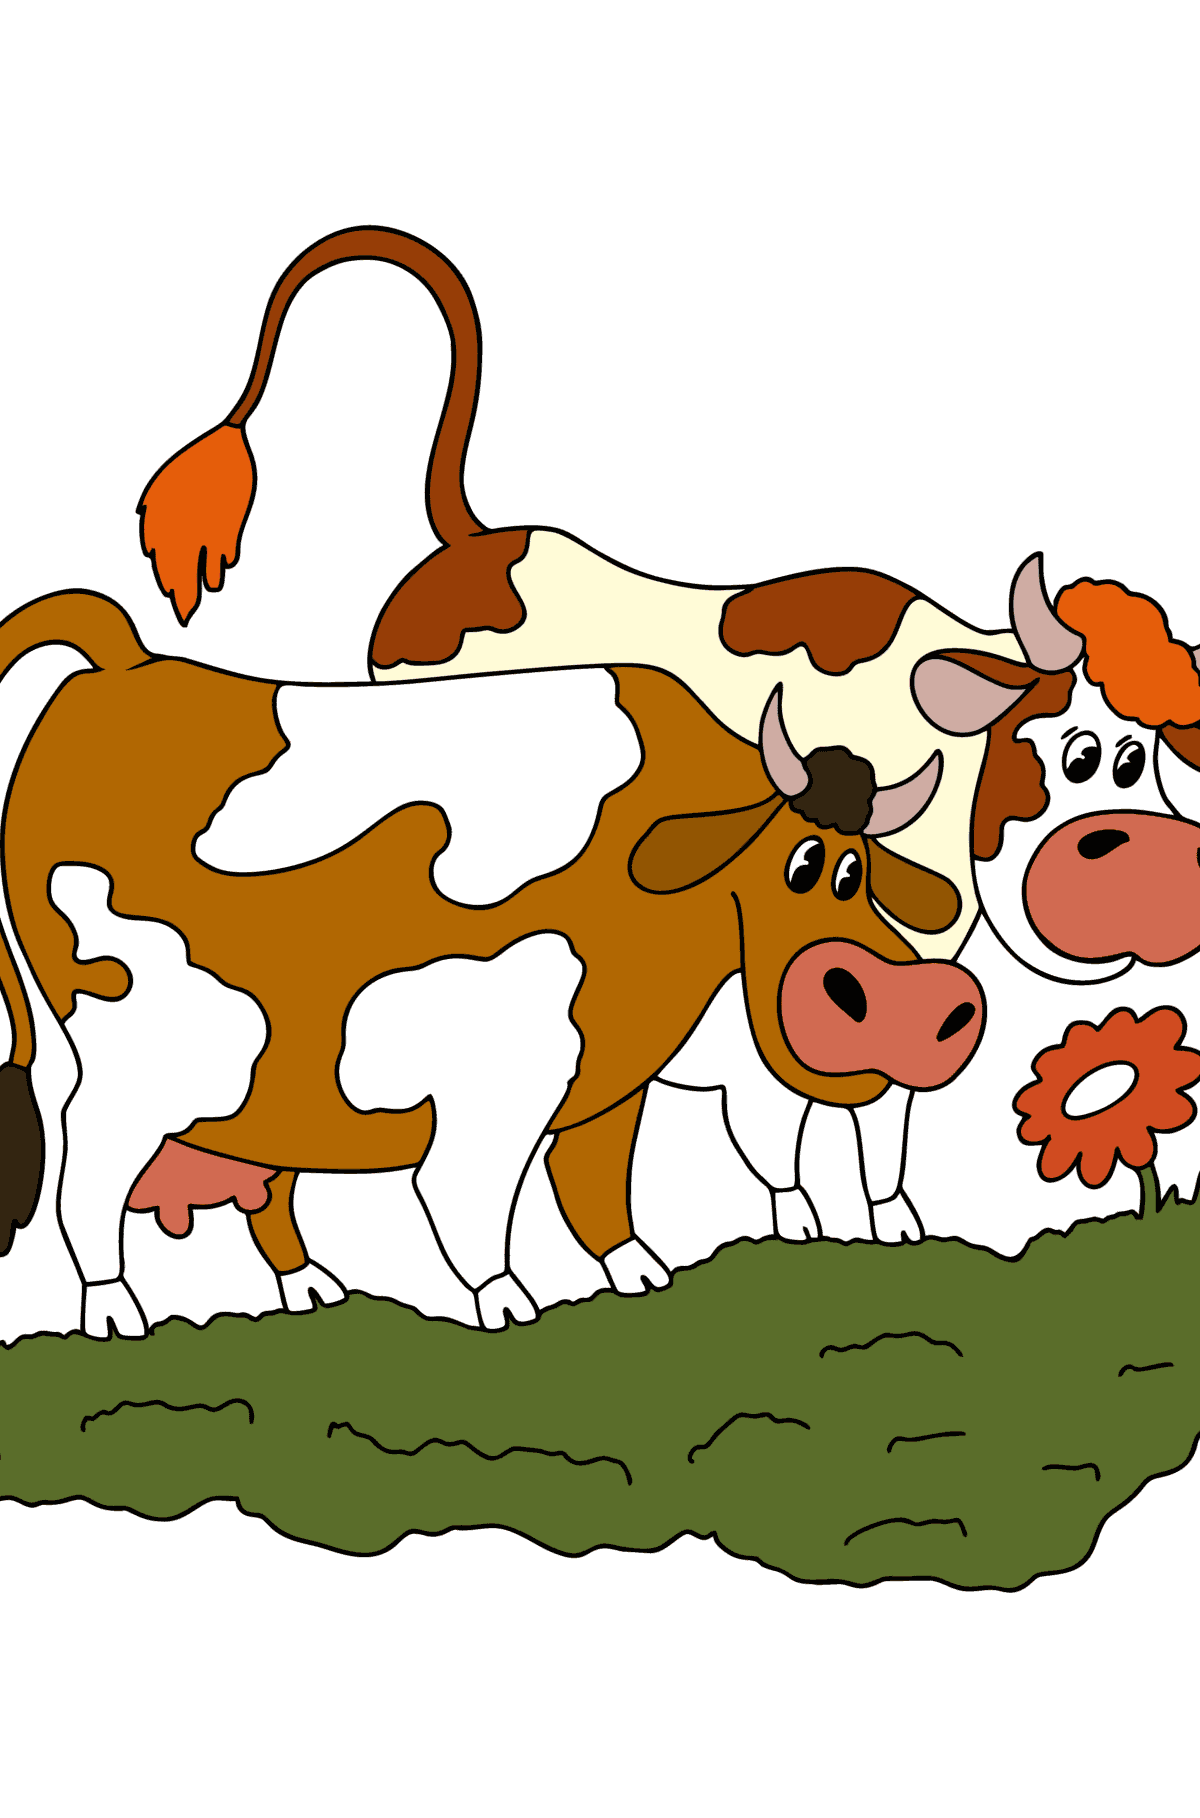 Kleurplaat Twee koeien in de wei - kleurplaten voor kinderen